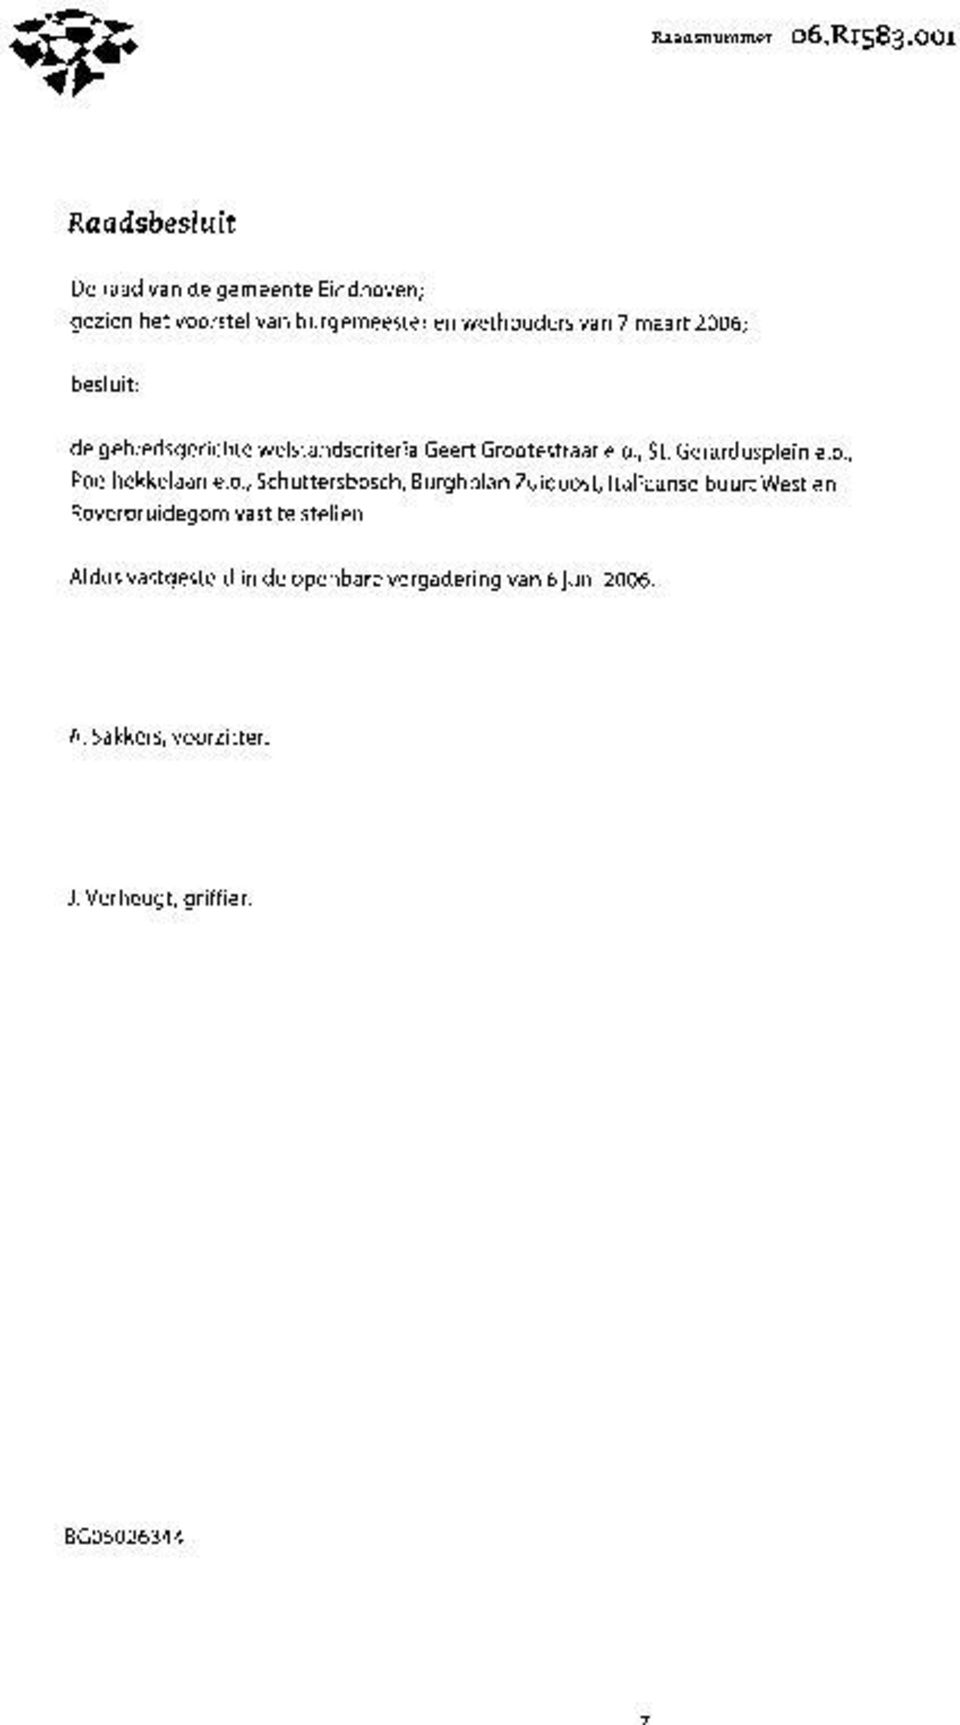 2006; besluit: de gebiedsgerichte welstandscriteria Geert Grootestraat e.o., St. Gerardusplein e.o., Poelhekkelaan e.